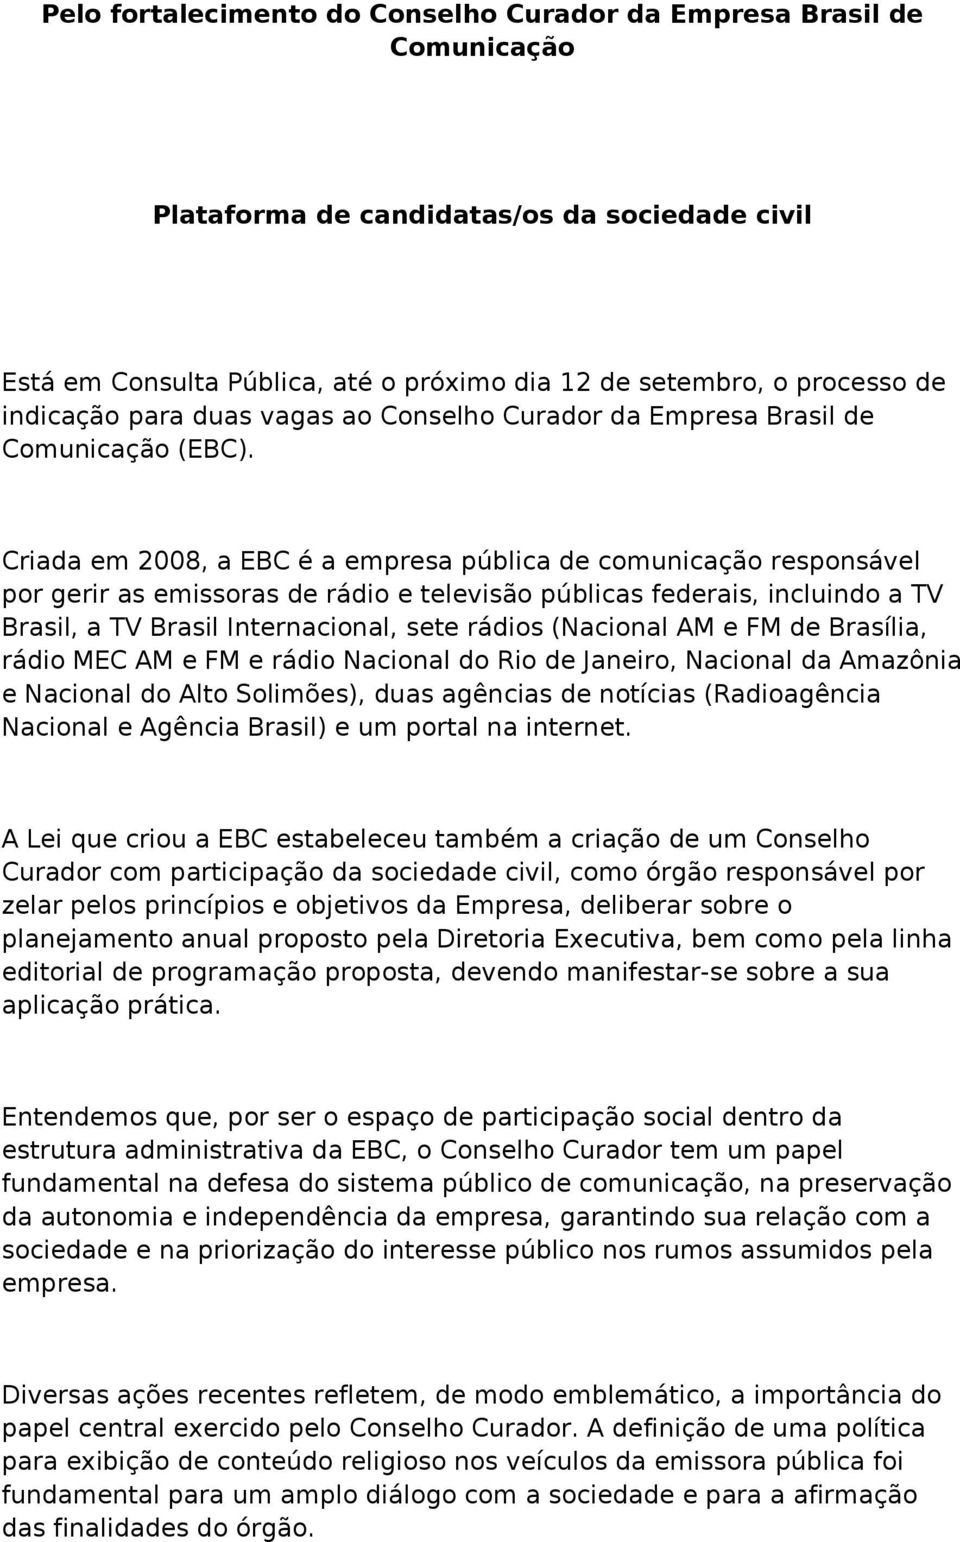 Criada em 2008, a EBC é a empresa pública de comunicação responsável por gerir as emissoras de rádio e televisão públicas federais, incluindo a TV Brasil, a TV Brasil Internacional, sete rádios